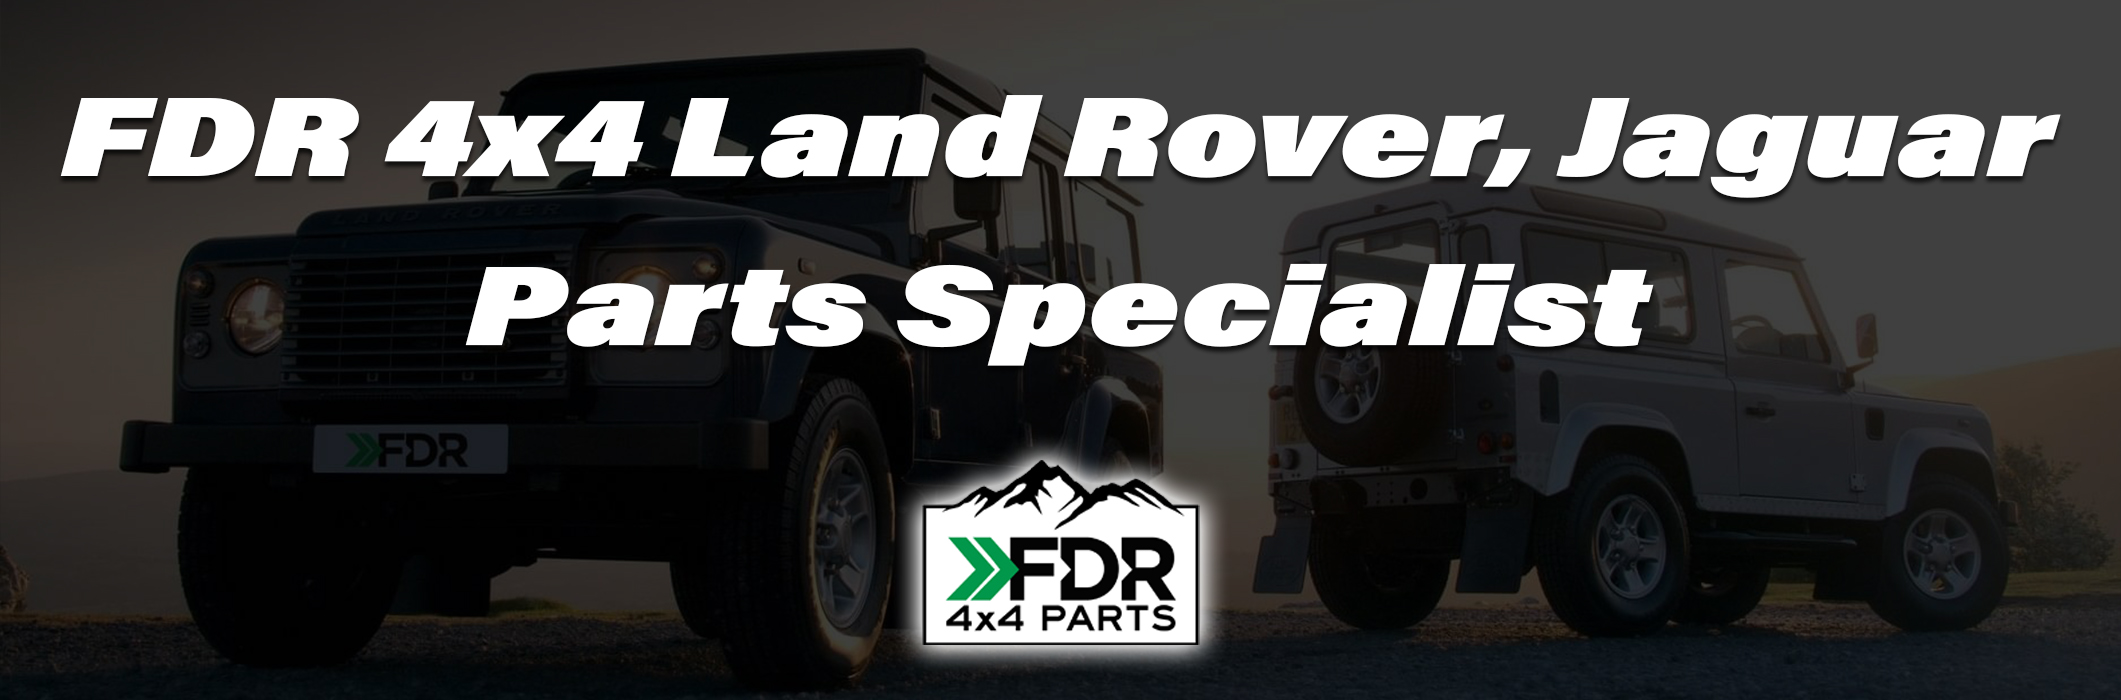 FDR 4x4 Land Rover & Jaguar Parts